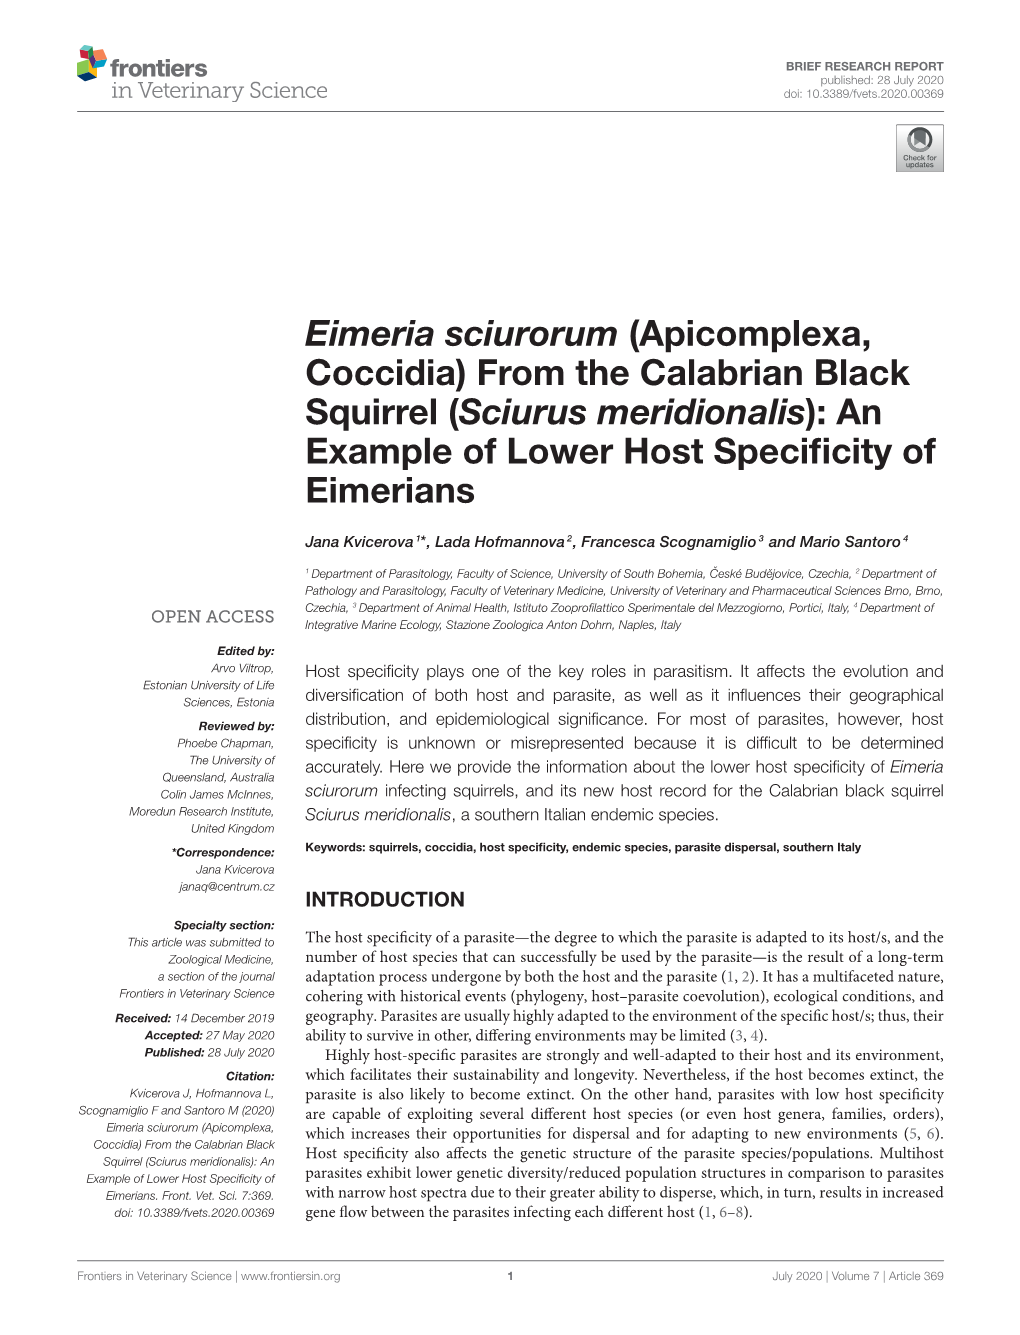 Eimeria Sciurorum (Apicomplexa, Coccidia) from the Calabrian Black Squirrel (Sciurus Meridionalis): an Example of Lower Host Speciﬁcity of Eimerians